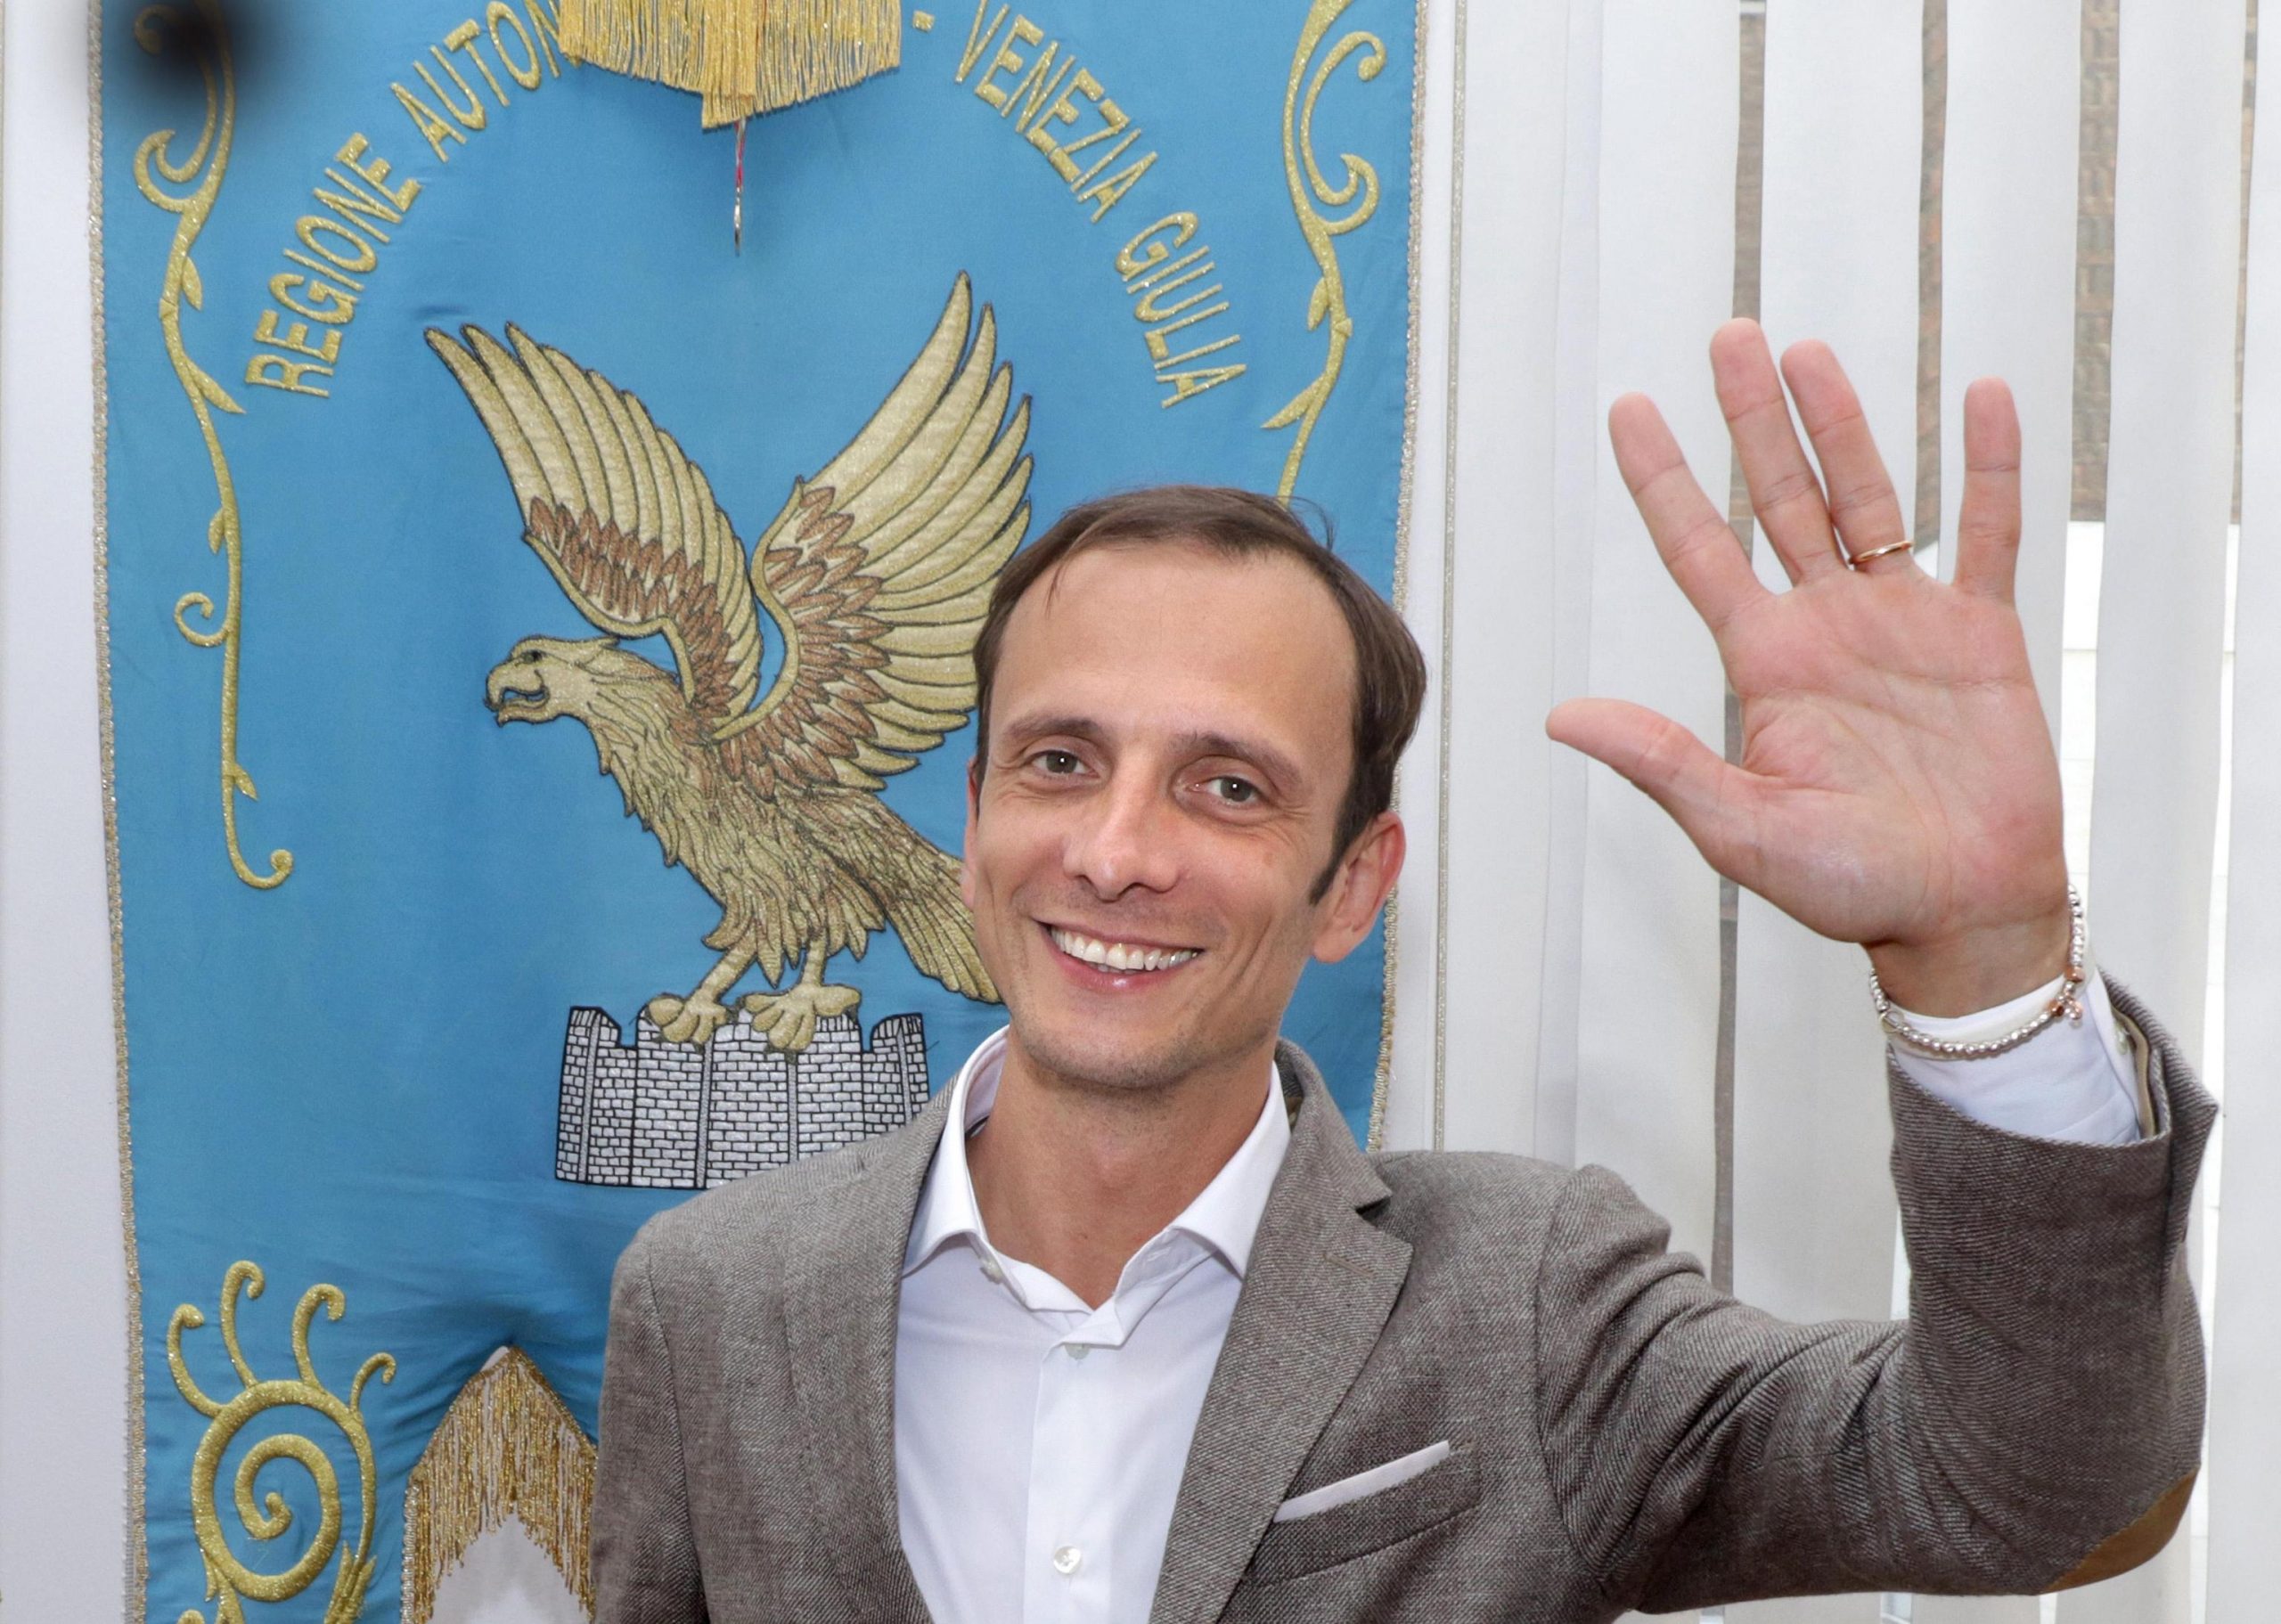 Elezioni regionali, Fedriga conferma i dissidi della destra: "Sbagliato fare una battaglia di bandierine"